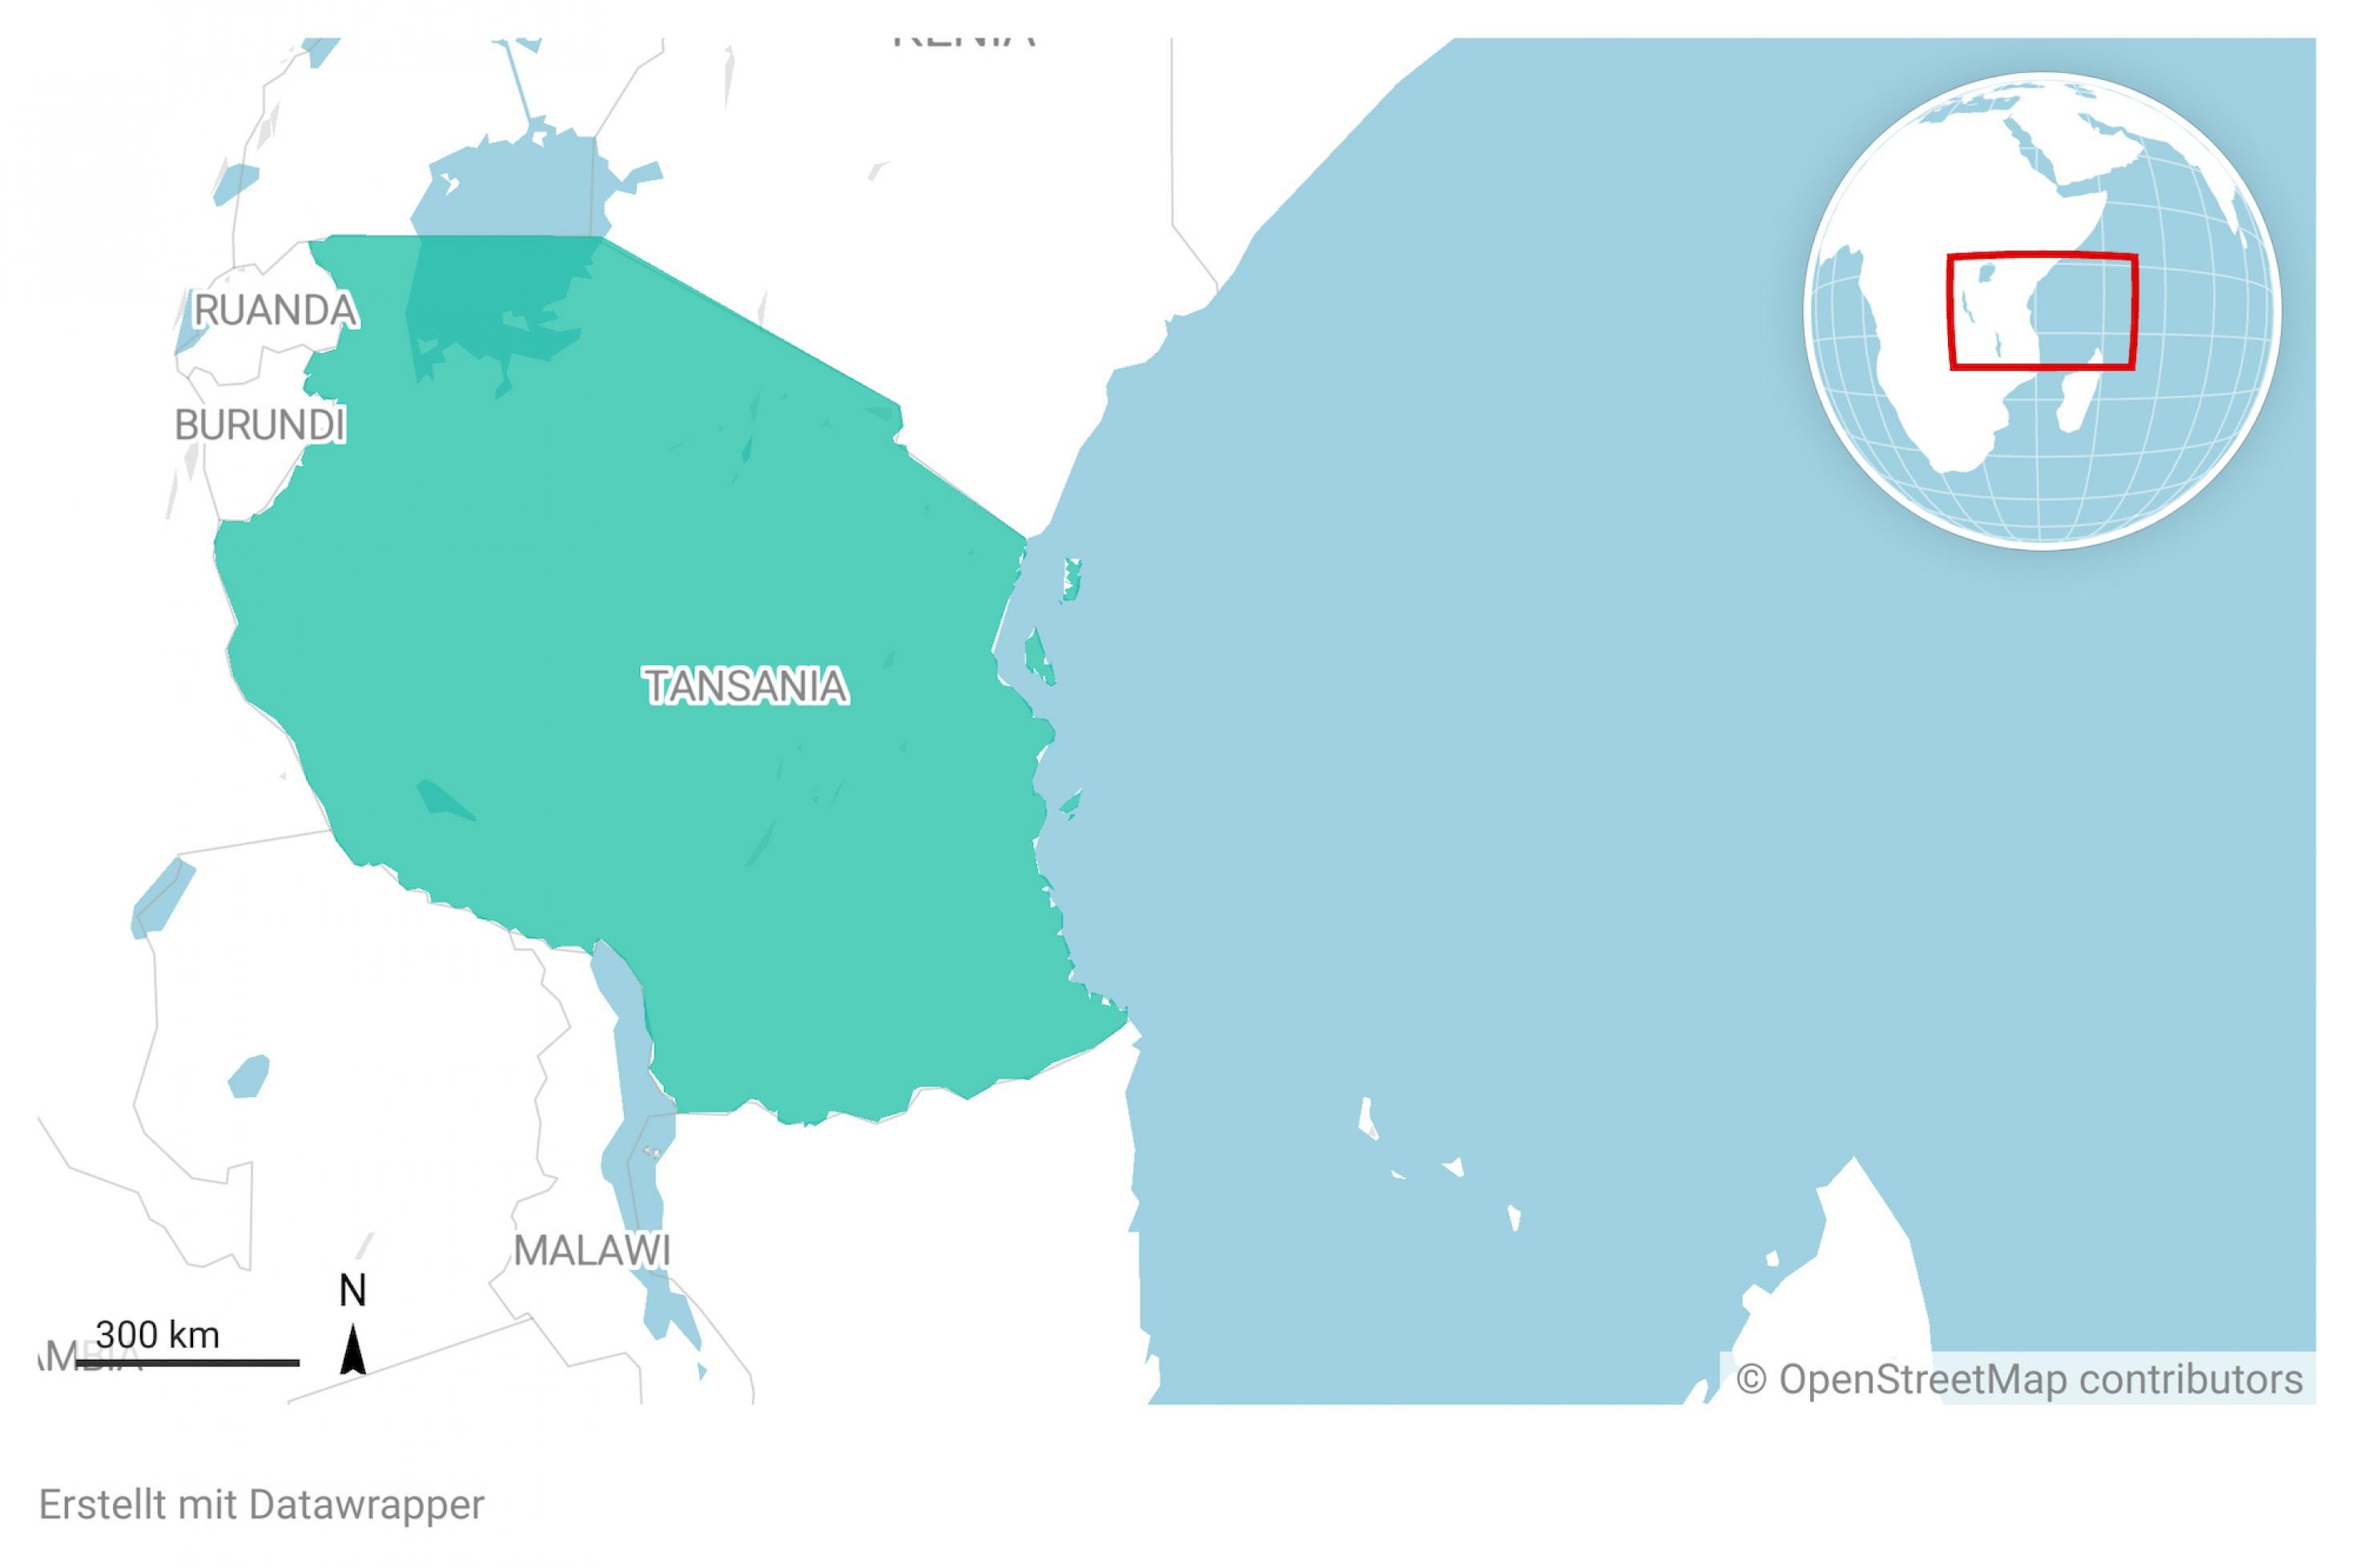 Ausschnitt aus einer Landkarte von Afrika. Das Land Tansania ist farblich hervorgehoben.